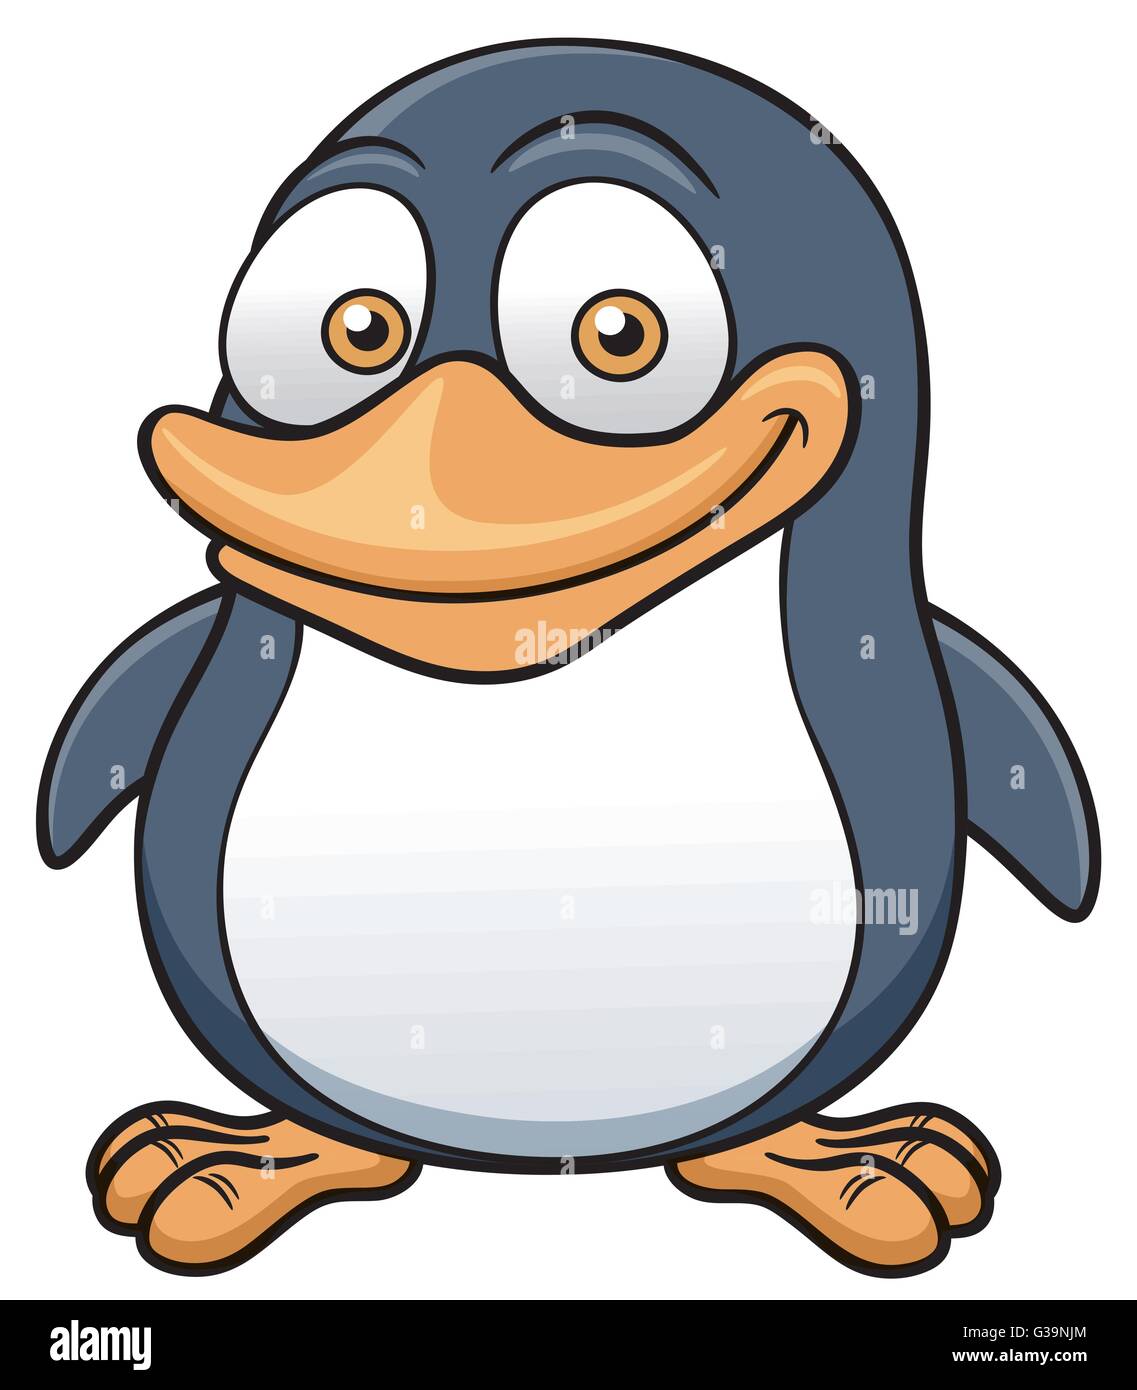 Illustrazione Vettoriale del pinguino cartoon Illustrazione Vettoriale